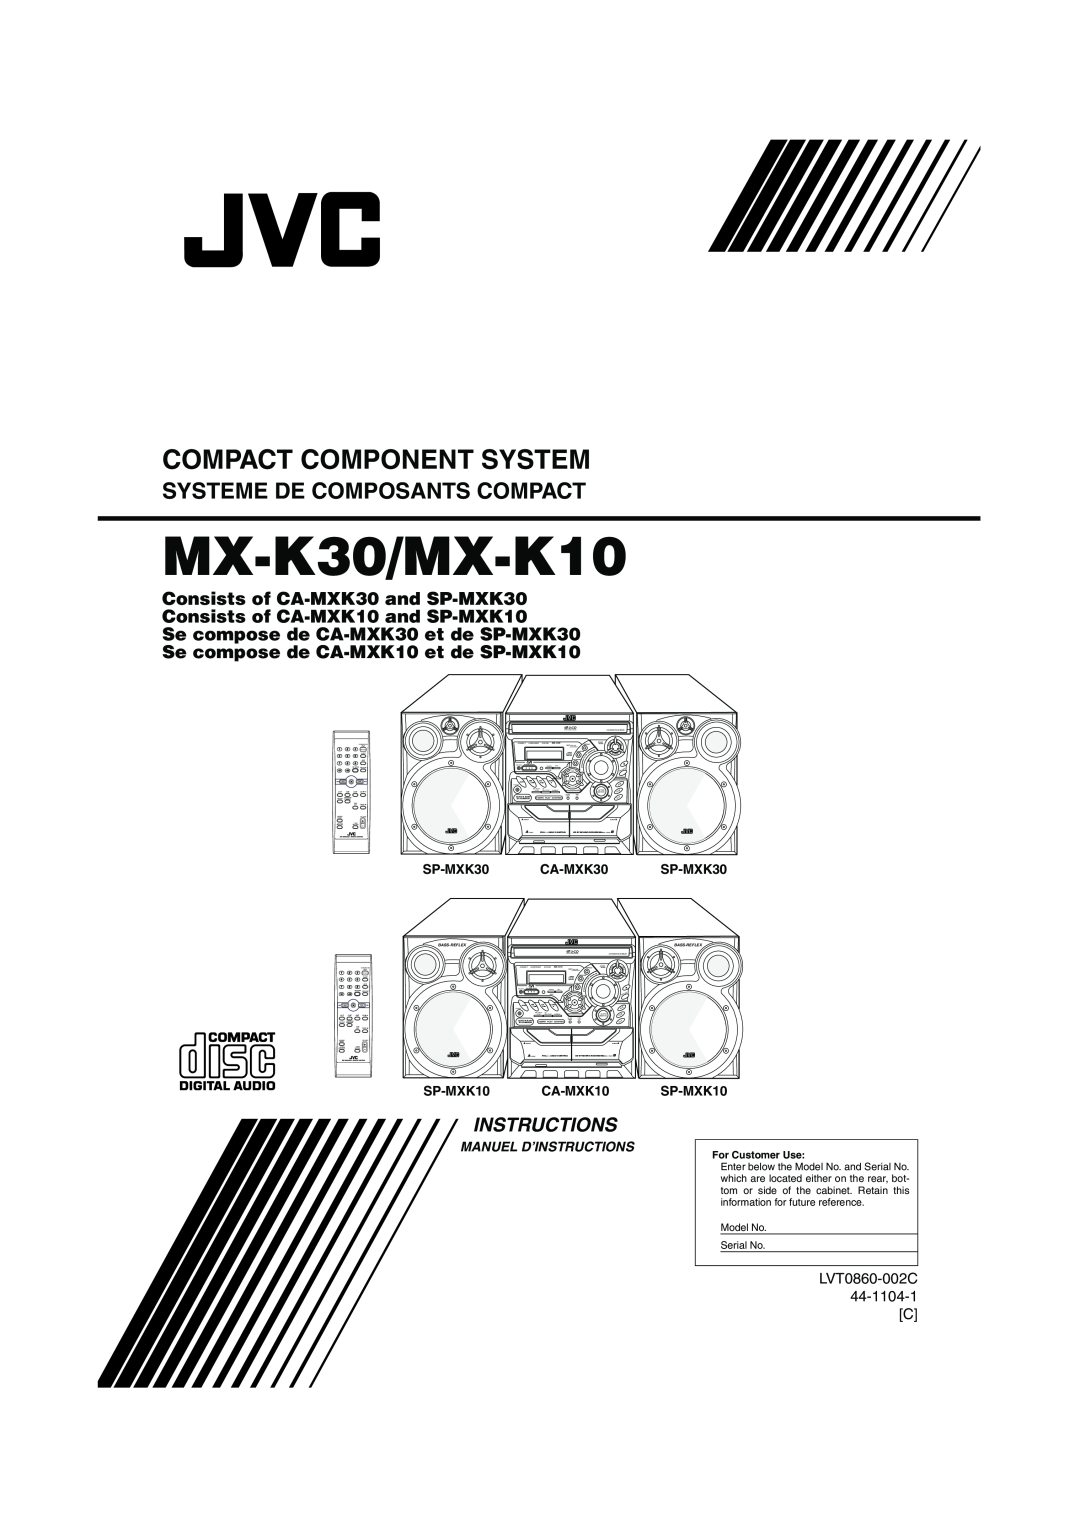 JVC manual MX-K30/MX-K10, Compact Component System, Systeme De Composants Compact, Instructions, LVT0860-002C 44-1104-1C 